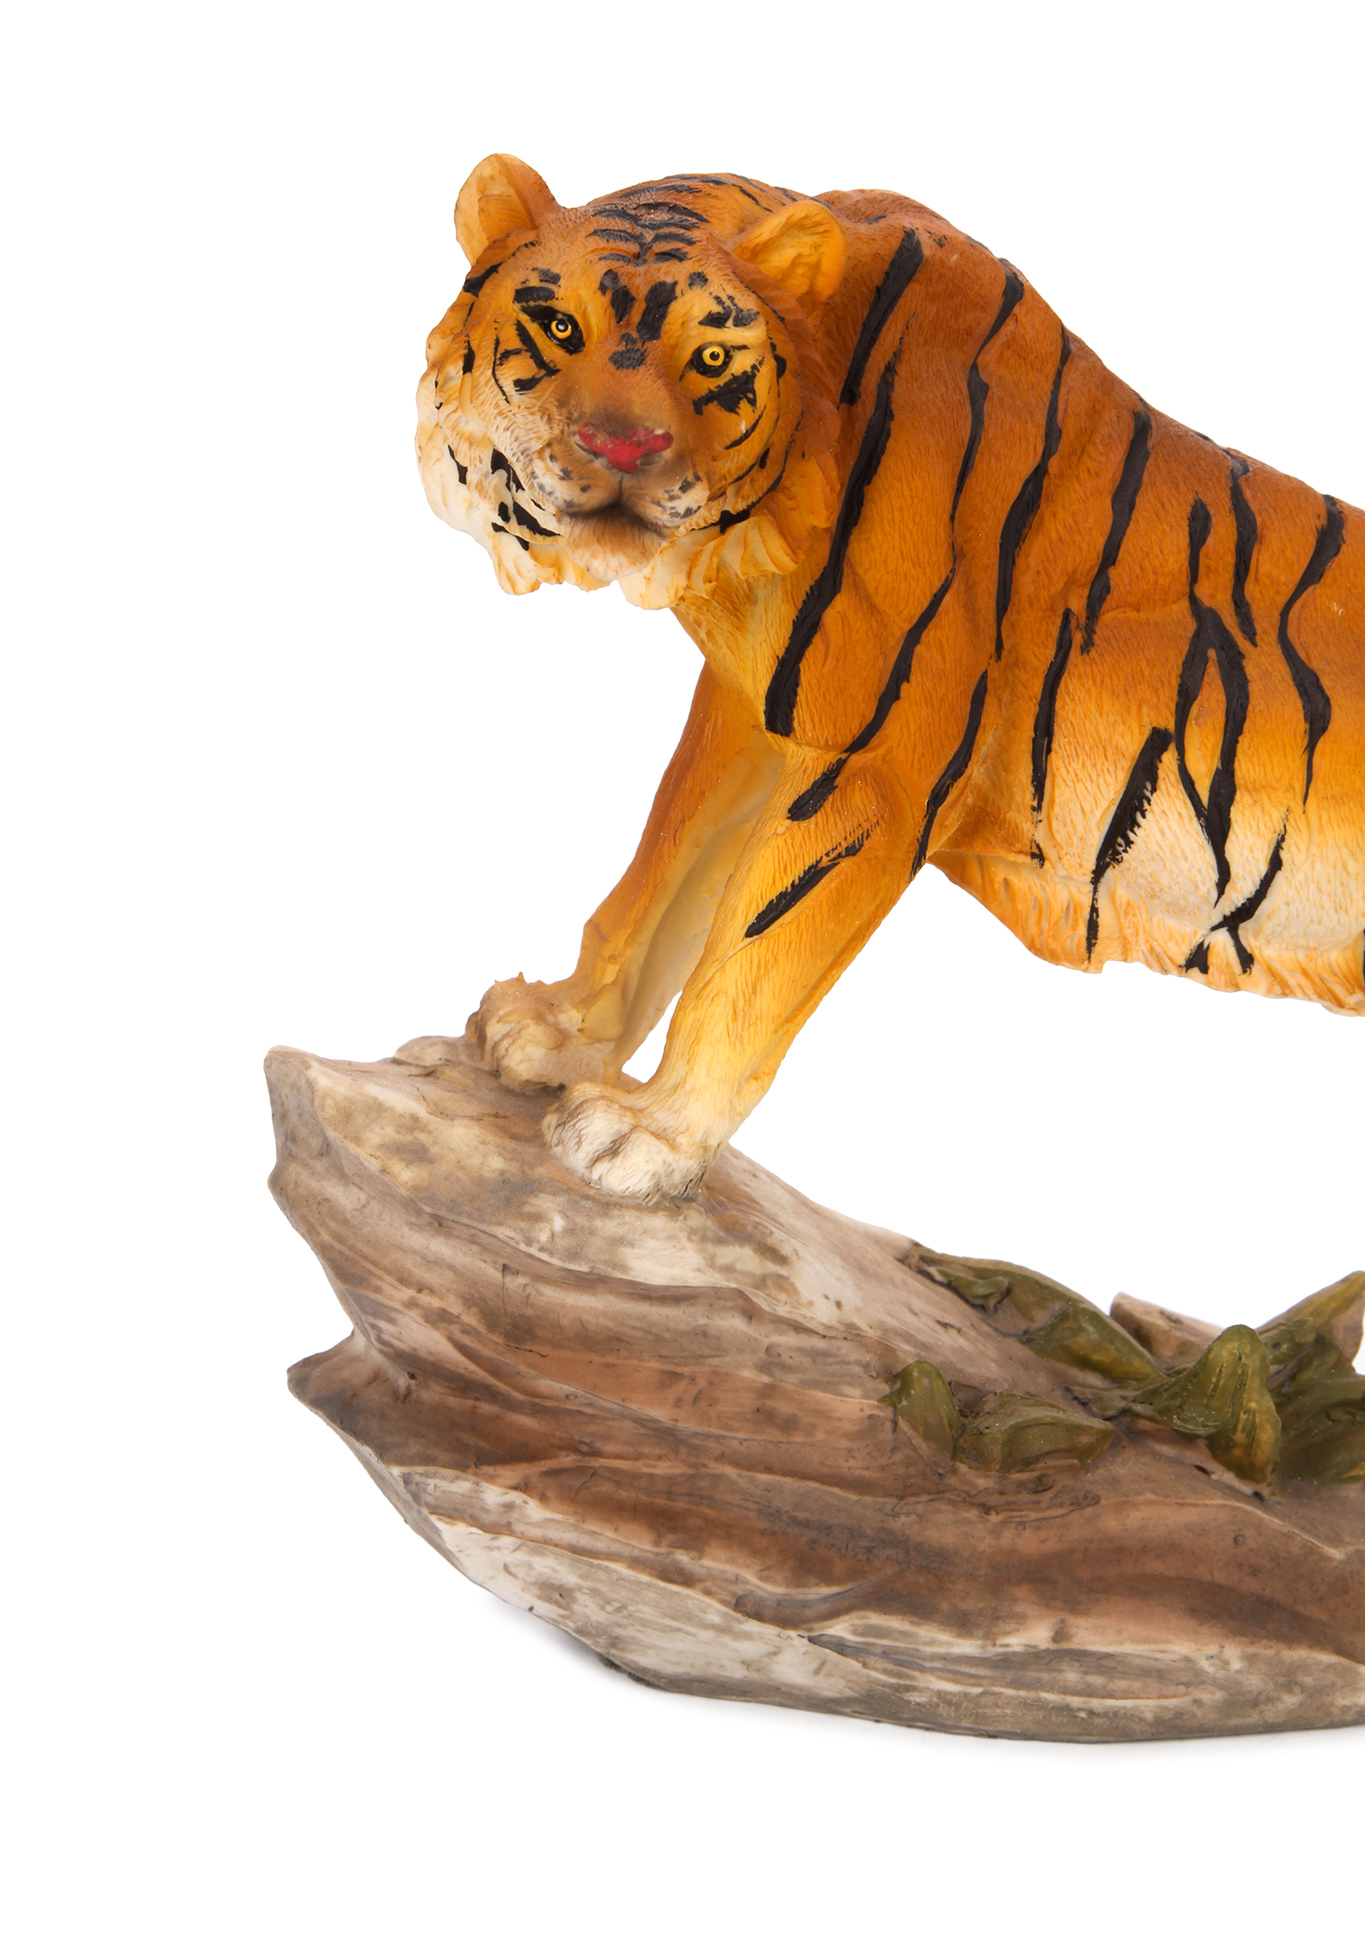 Оберег интерьерный "Тигр" Lefard, цвет стойка бенгальского тигра, размер 20,5*7*15 см - фото 3